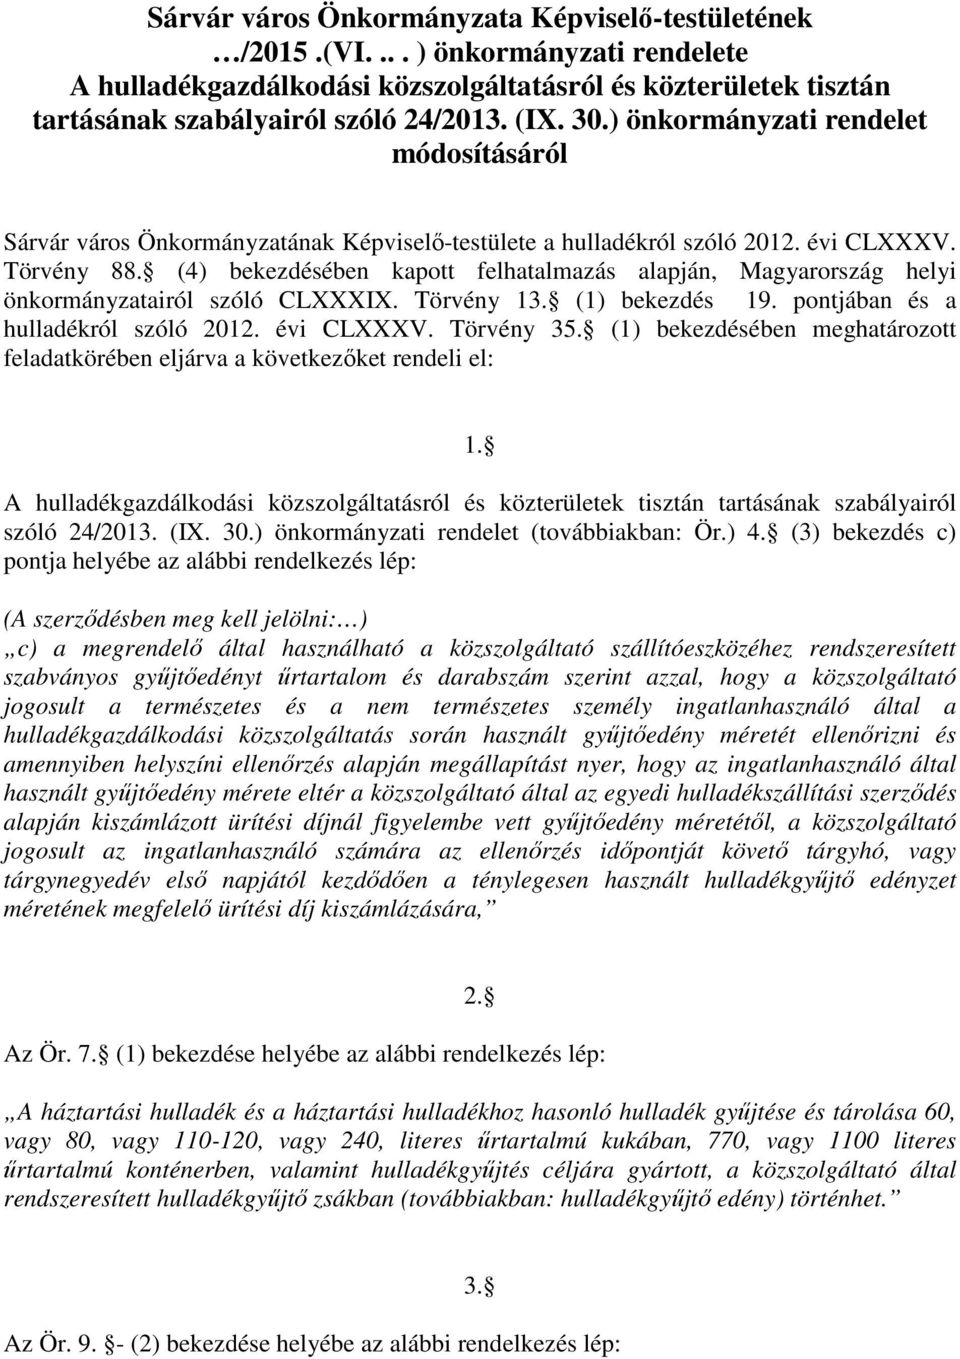 (4) bekezdésében kapott felhatalmazás alapján, Magyarország helyi önkormányzatairól szóló CLXXXIX. Törvény 13. (1) bekezdés 19. pontjában és a hulladékról szóló 2012. évi CLXXXV. Törvény 35.